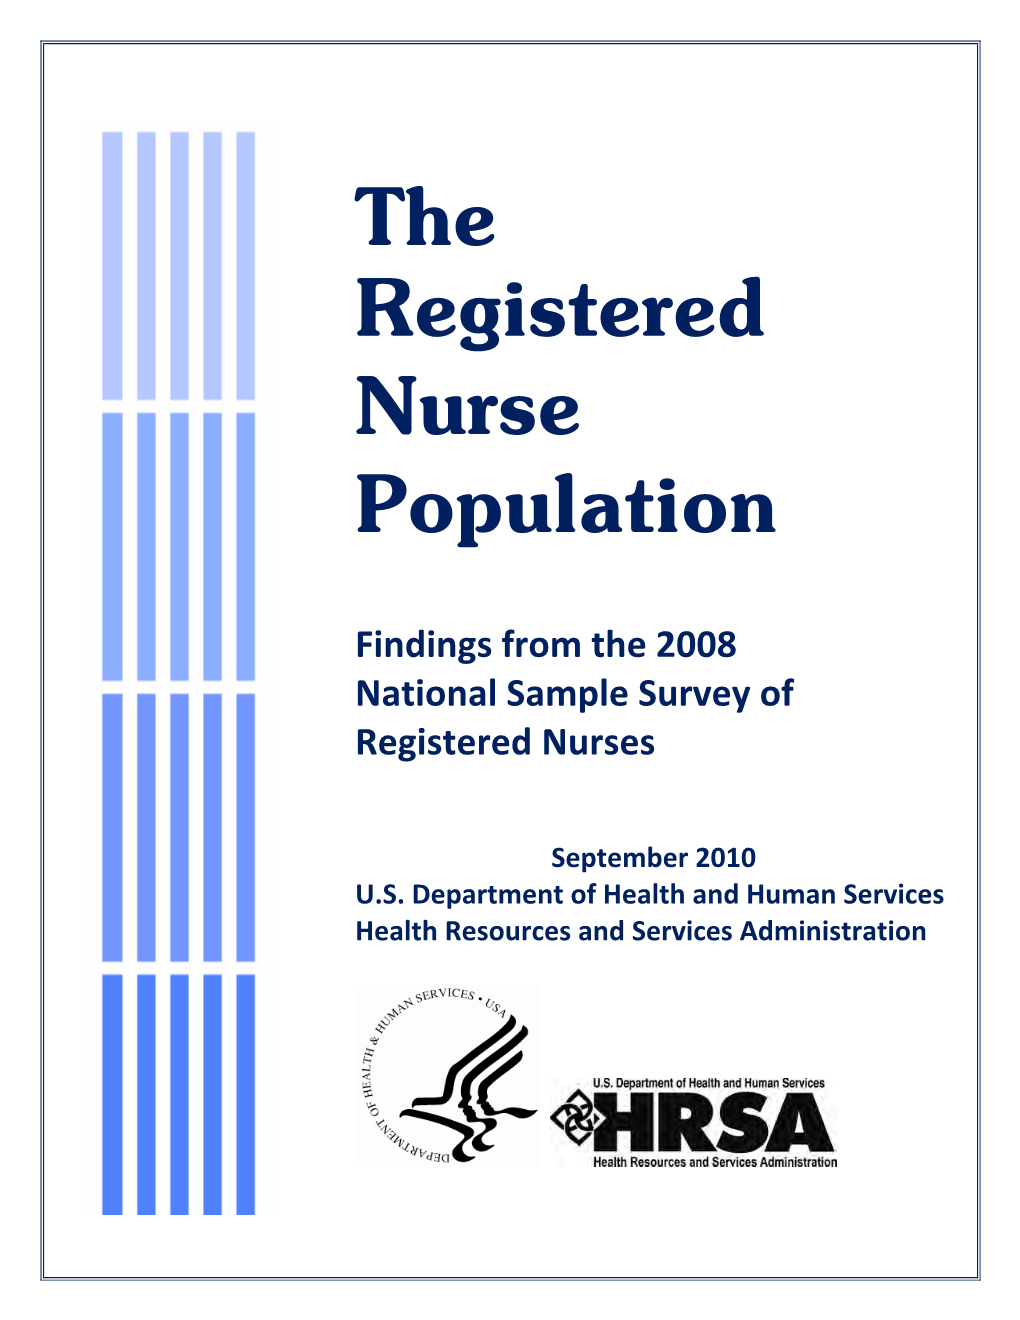 The Registered Nurse Population